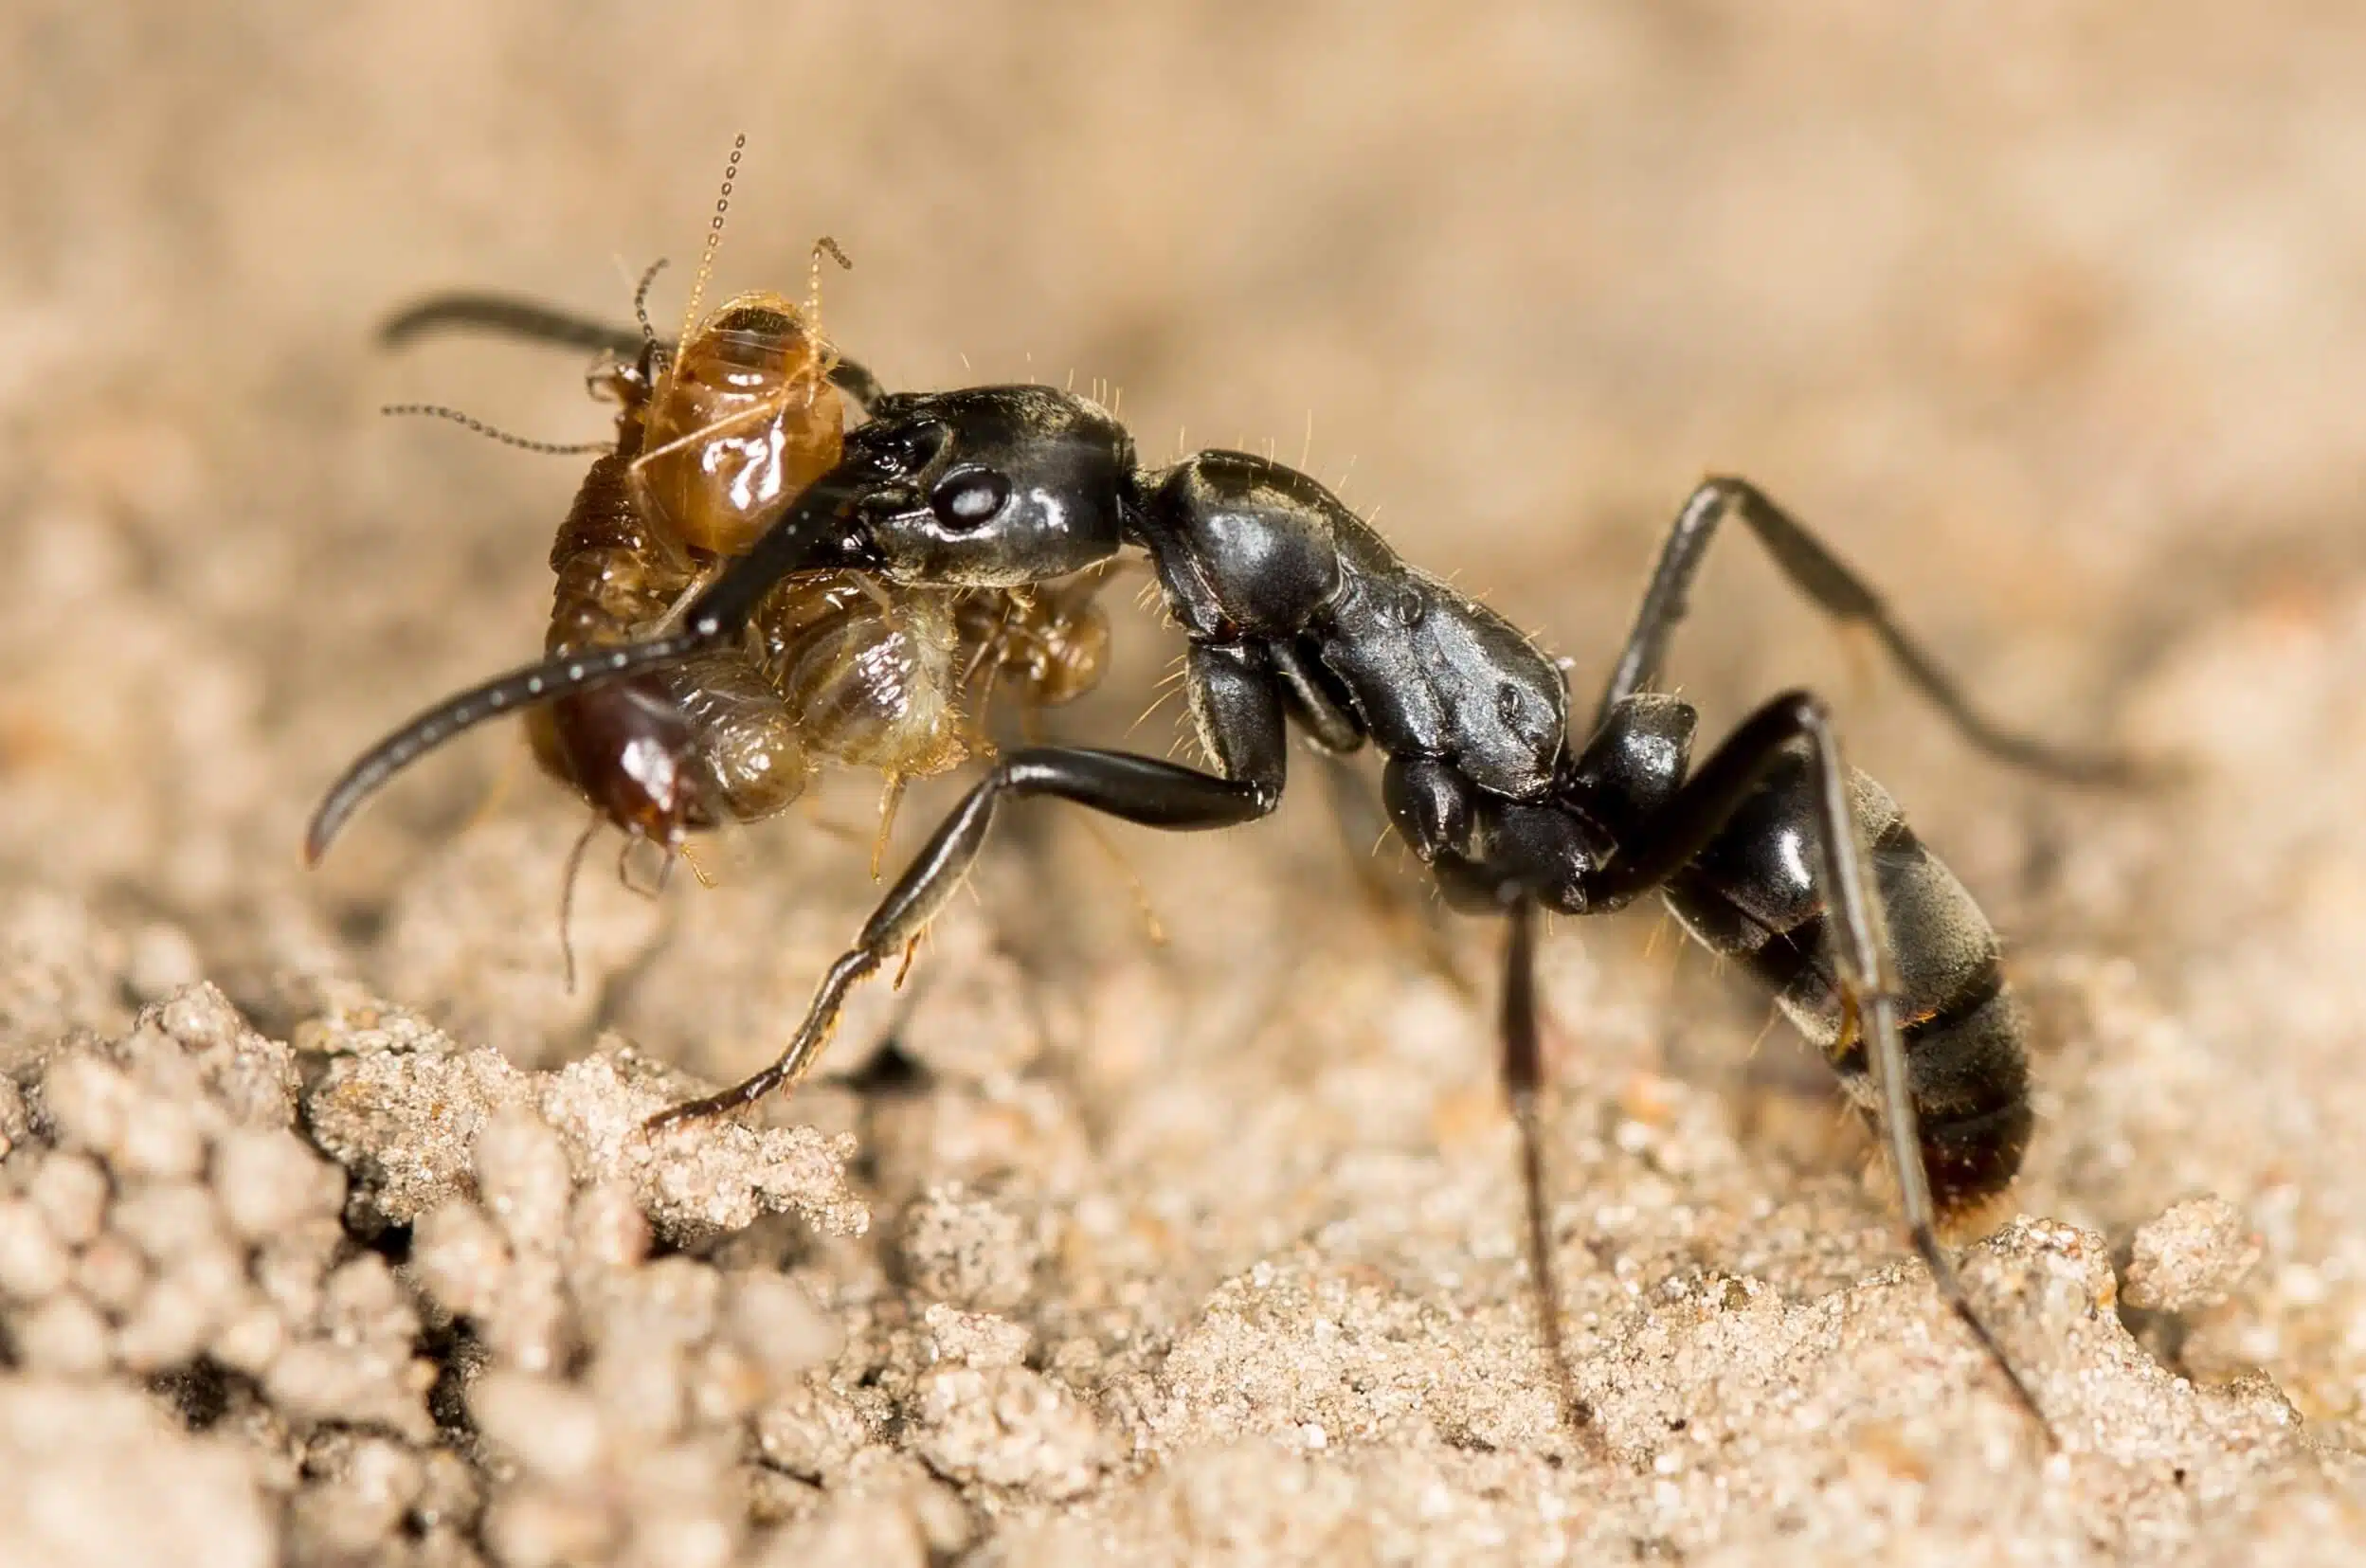 
הטיפול המסור מצליח להציל את חייהן של לא פחות מכ-90 אחוז מהנמלים הפצועות. נמלת מגפונרה אנאליס עם טרמיטים, צילום: ETF89, CC BY-SA 4.0